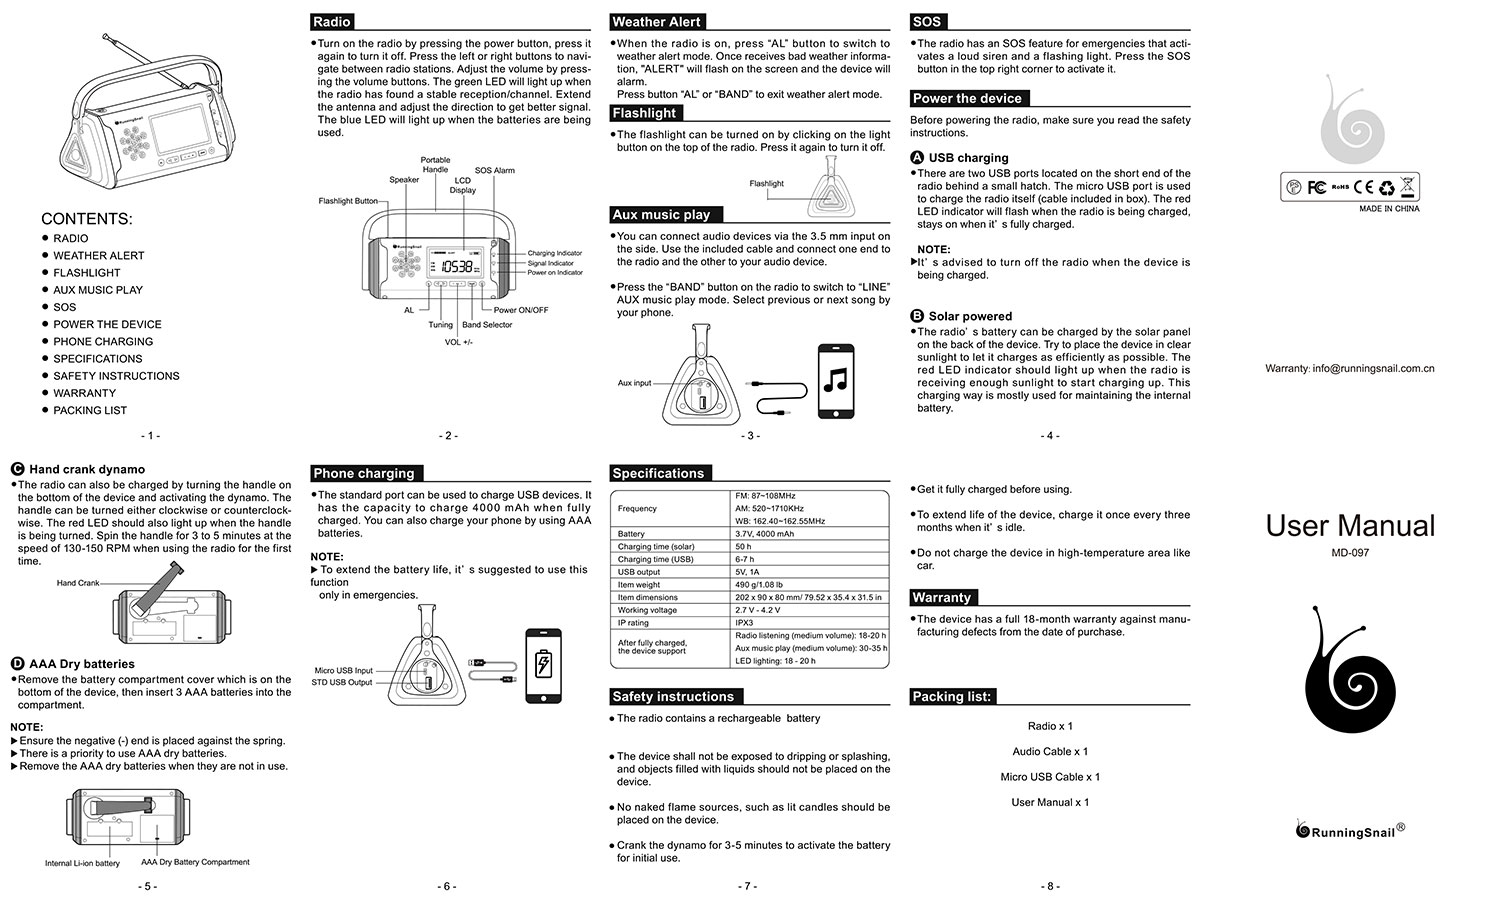 runningsnail md-097 user manual